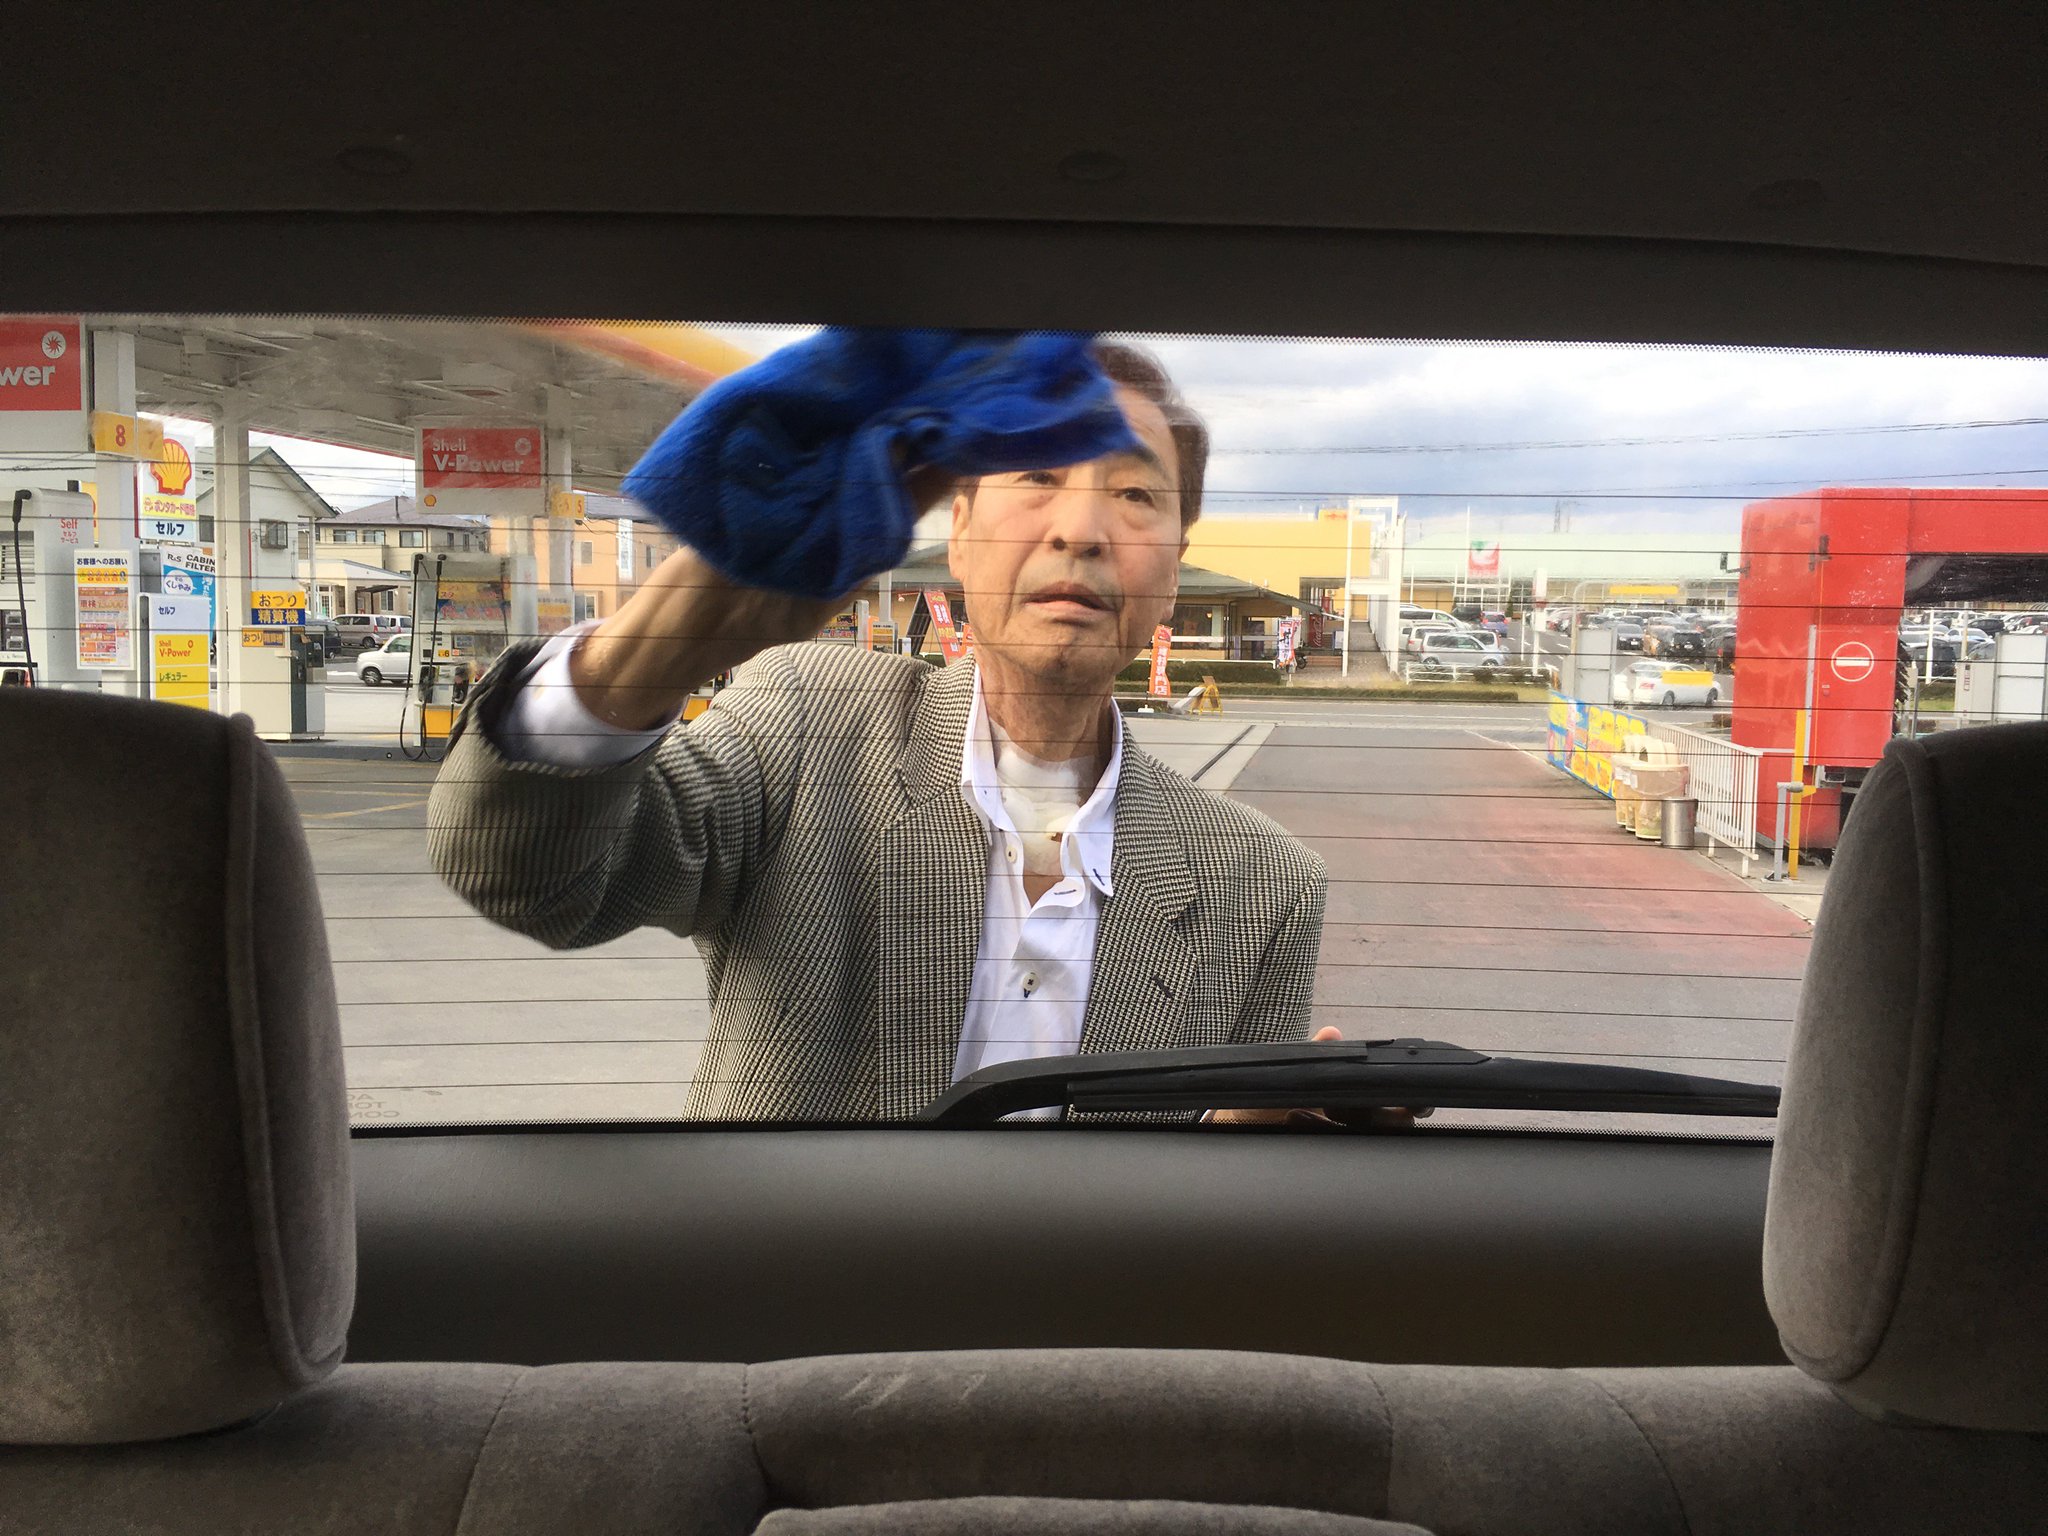 Mr.ハタは誇り高き男。がんにも関わらず、息子が乗る車は自分できれいに。(1年前の英語版ツイートを元に再現しています) https://t.co/Clz7BefAtt